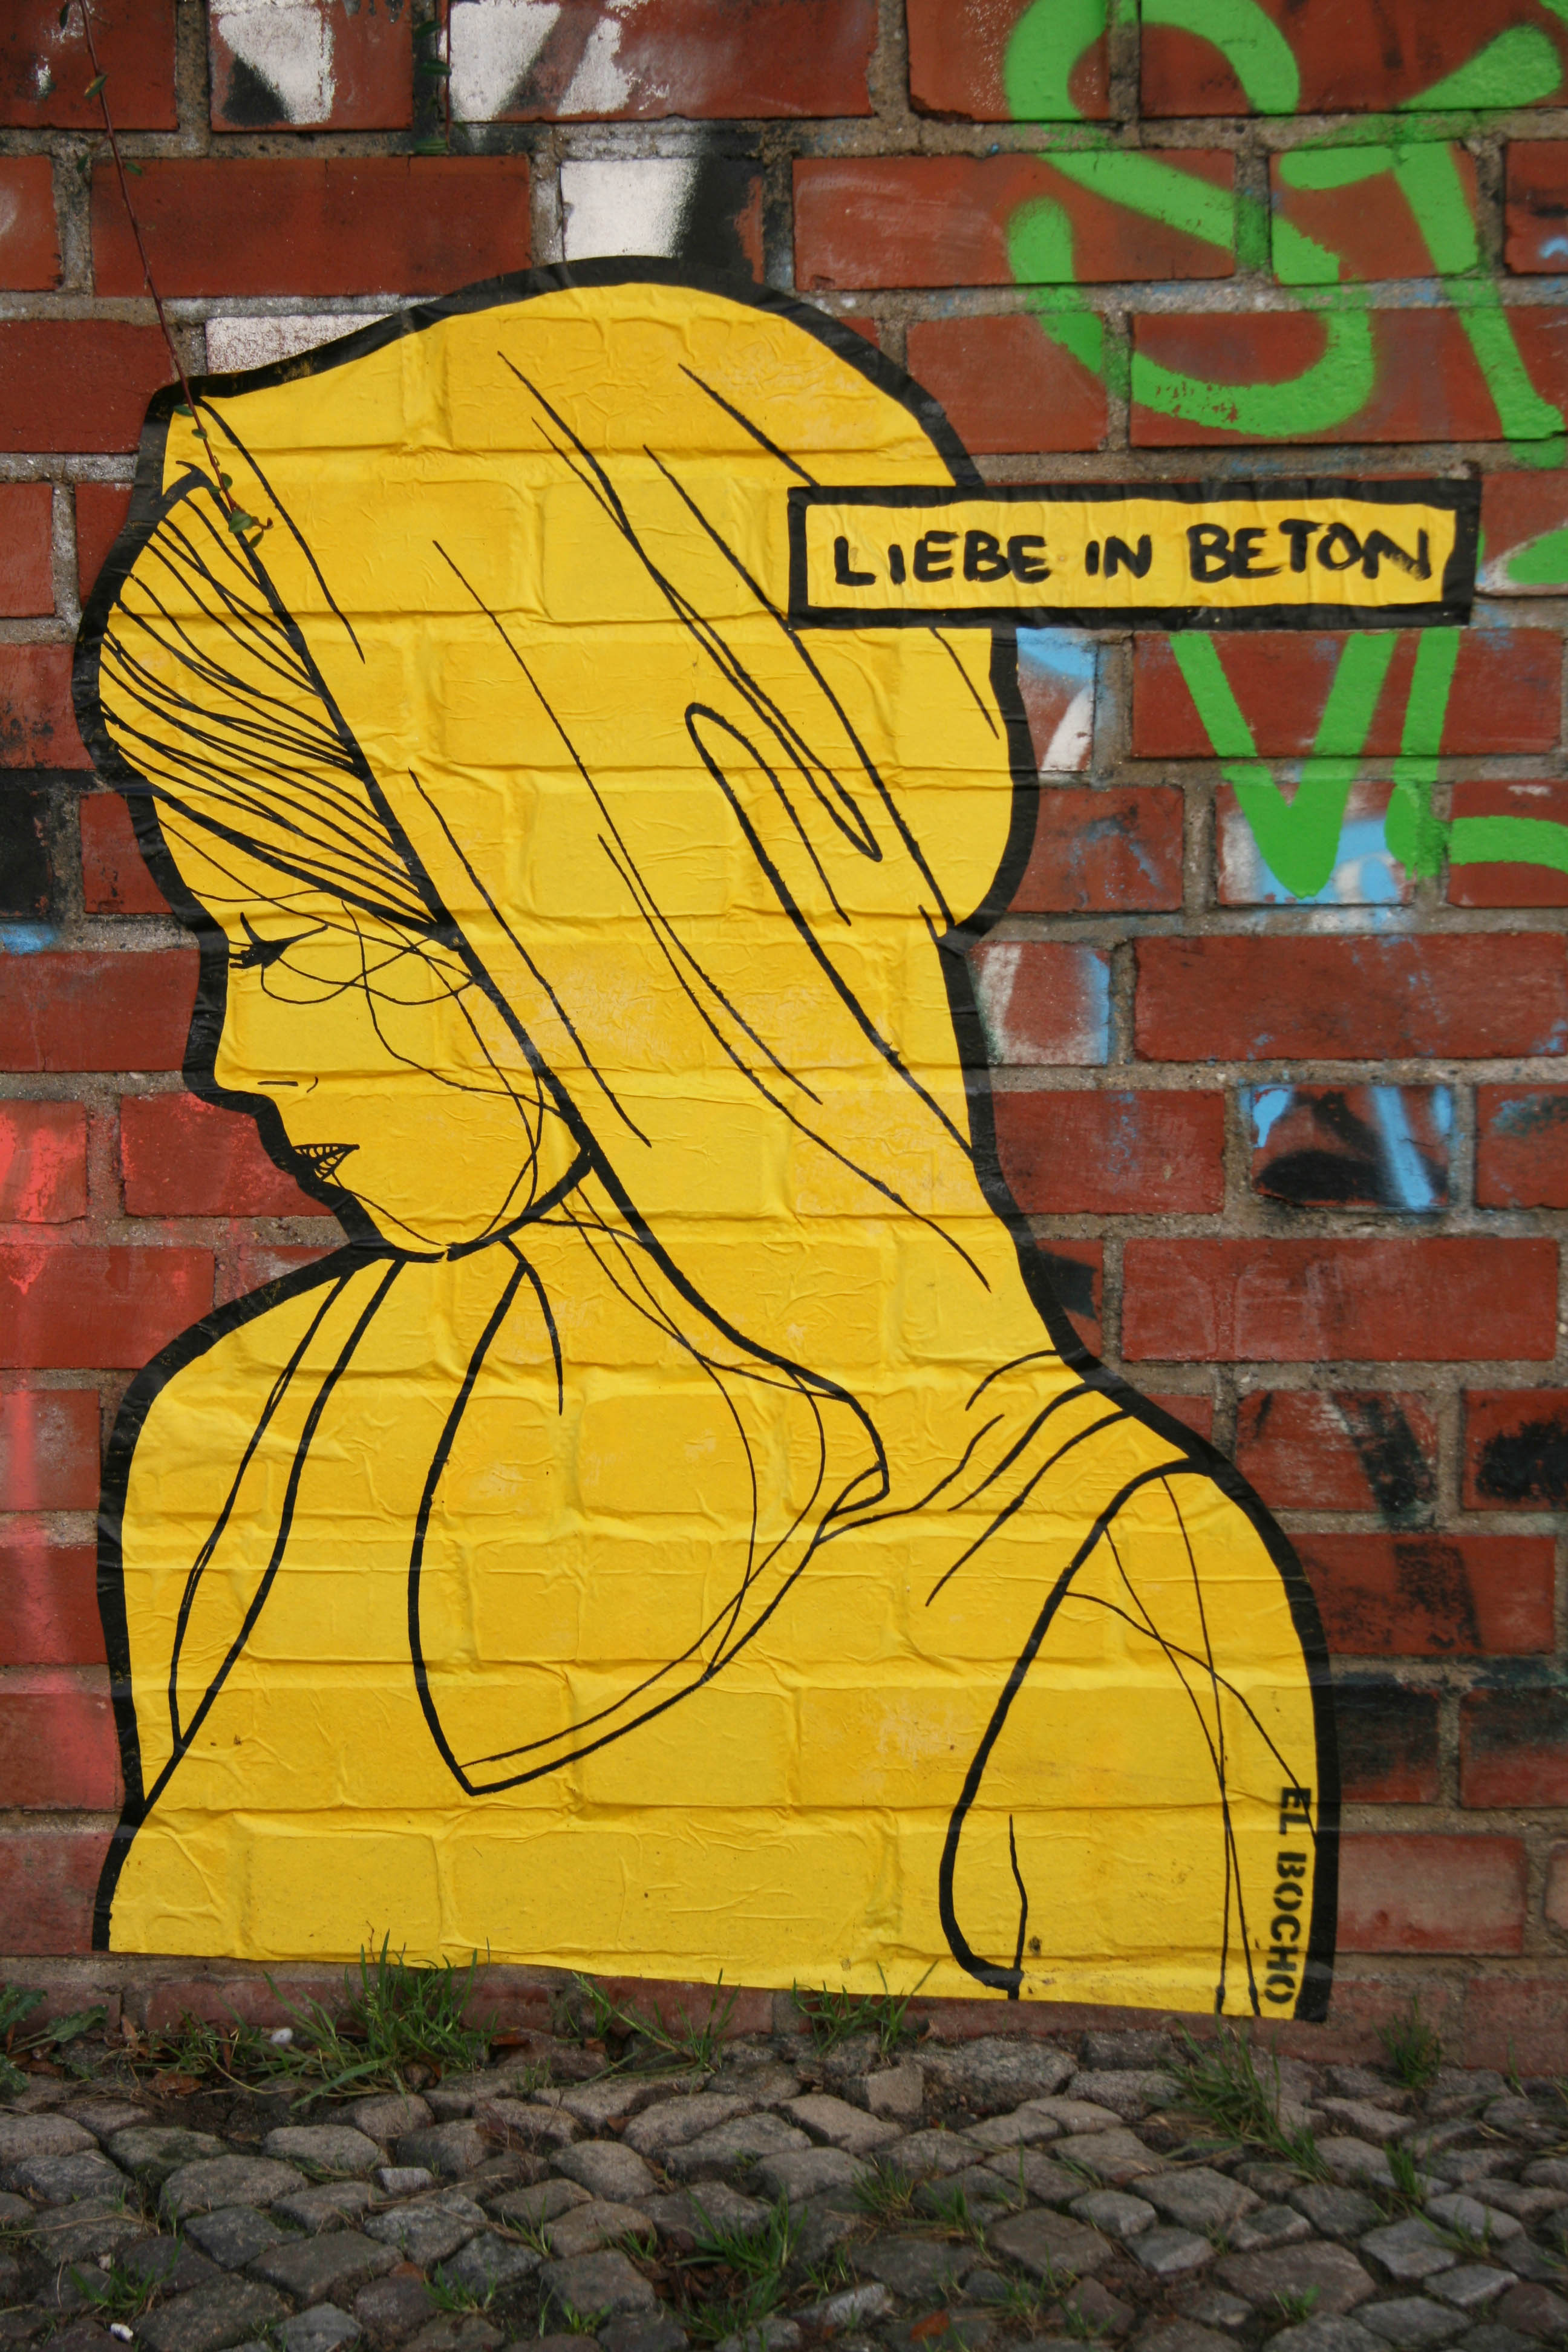 Liebe in Beton: Street Art by El Bocho in Berlin